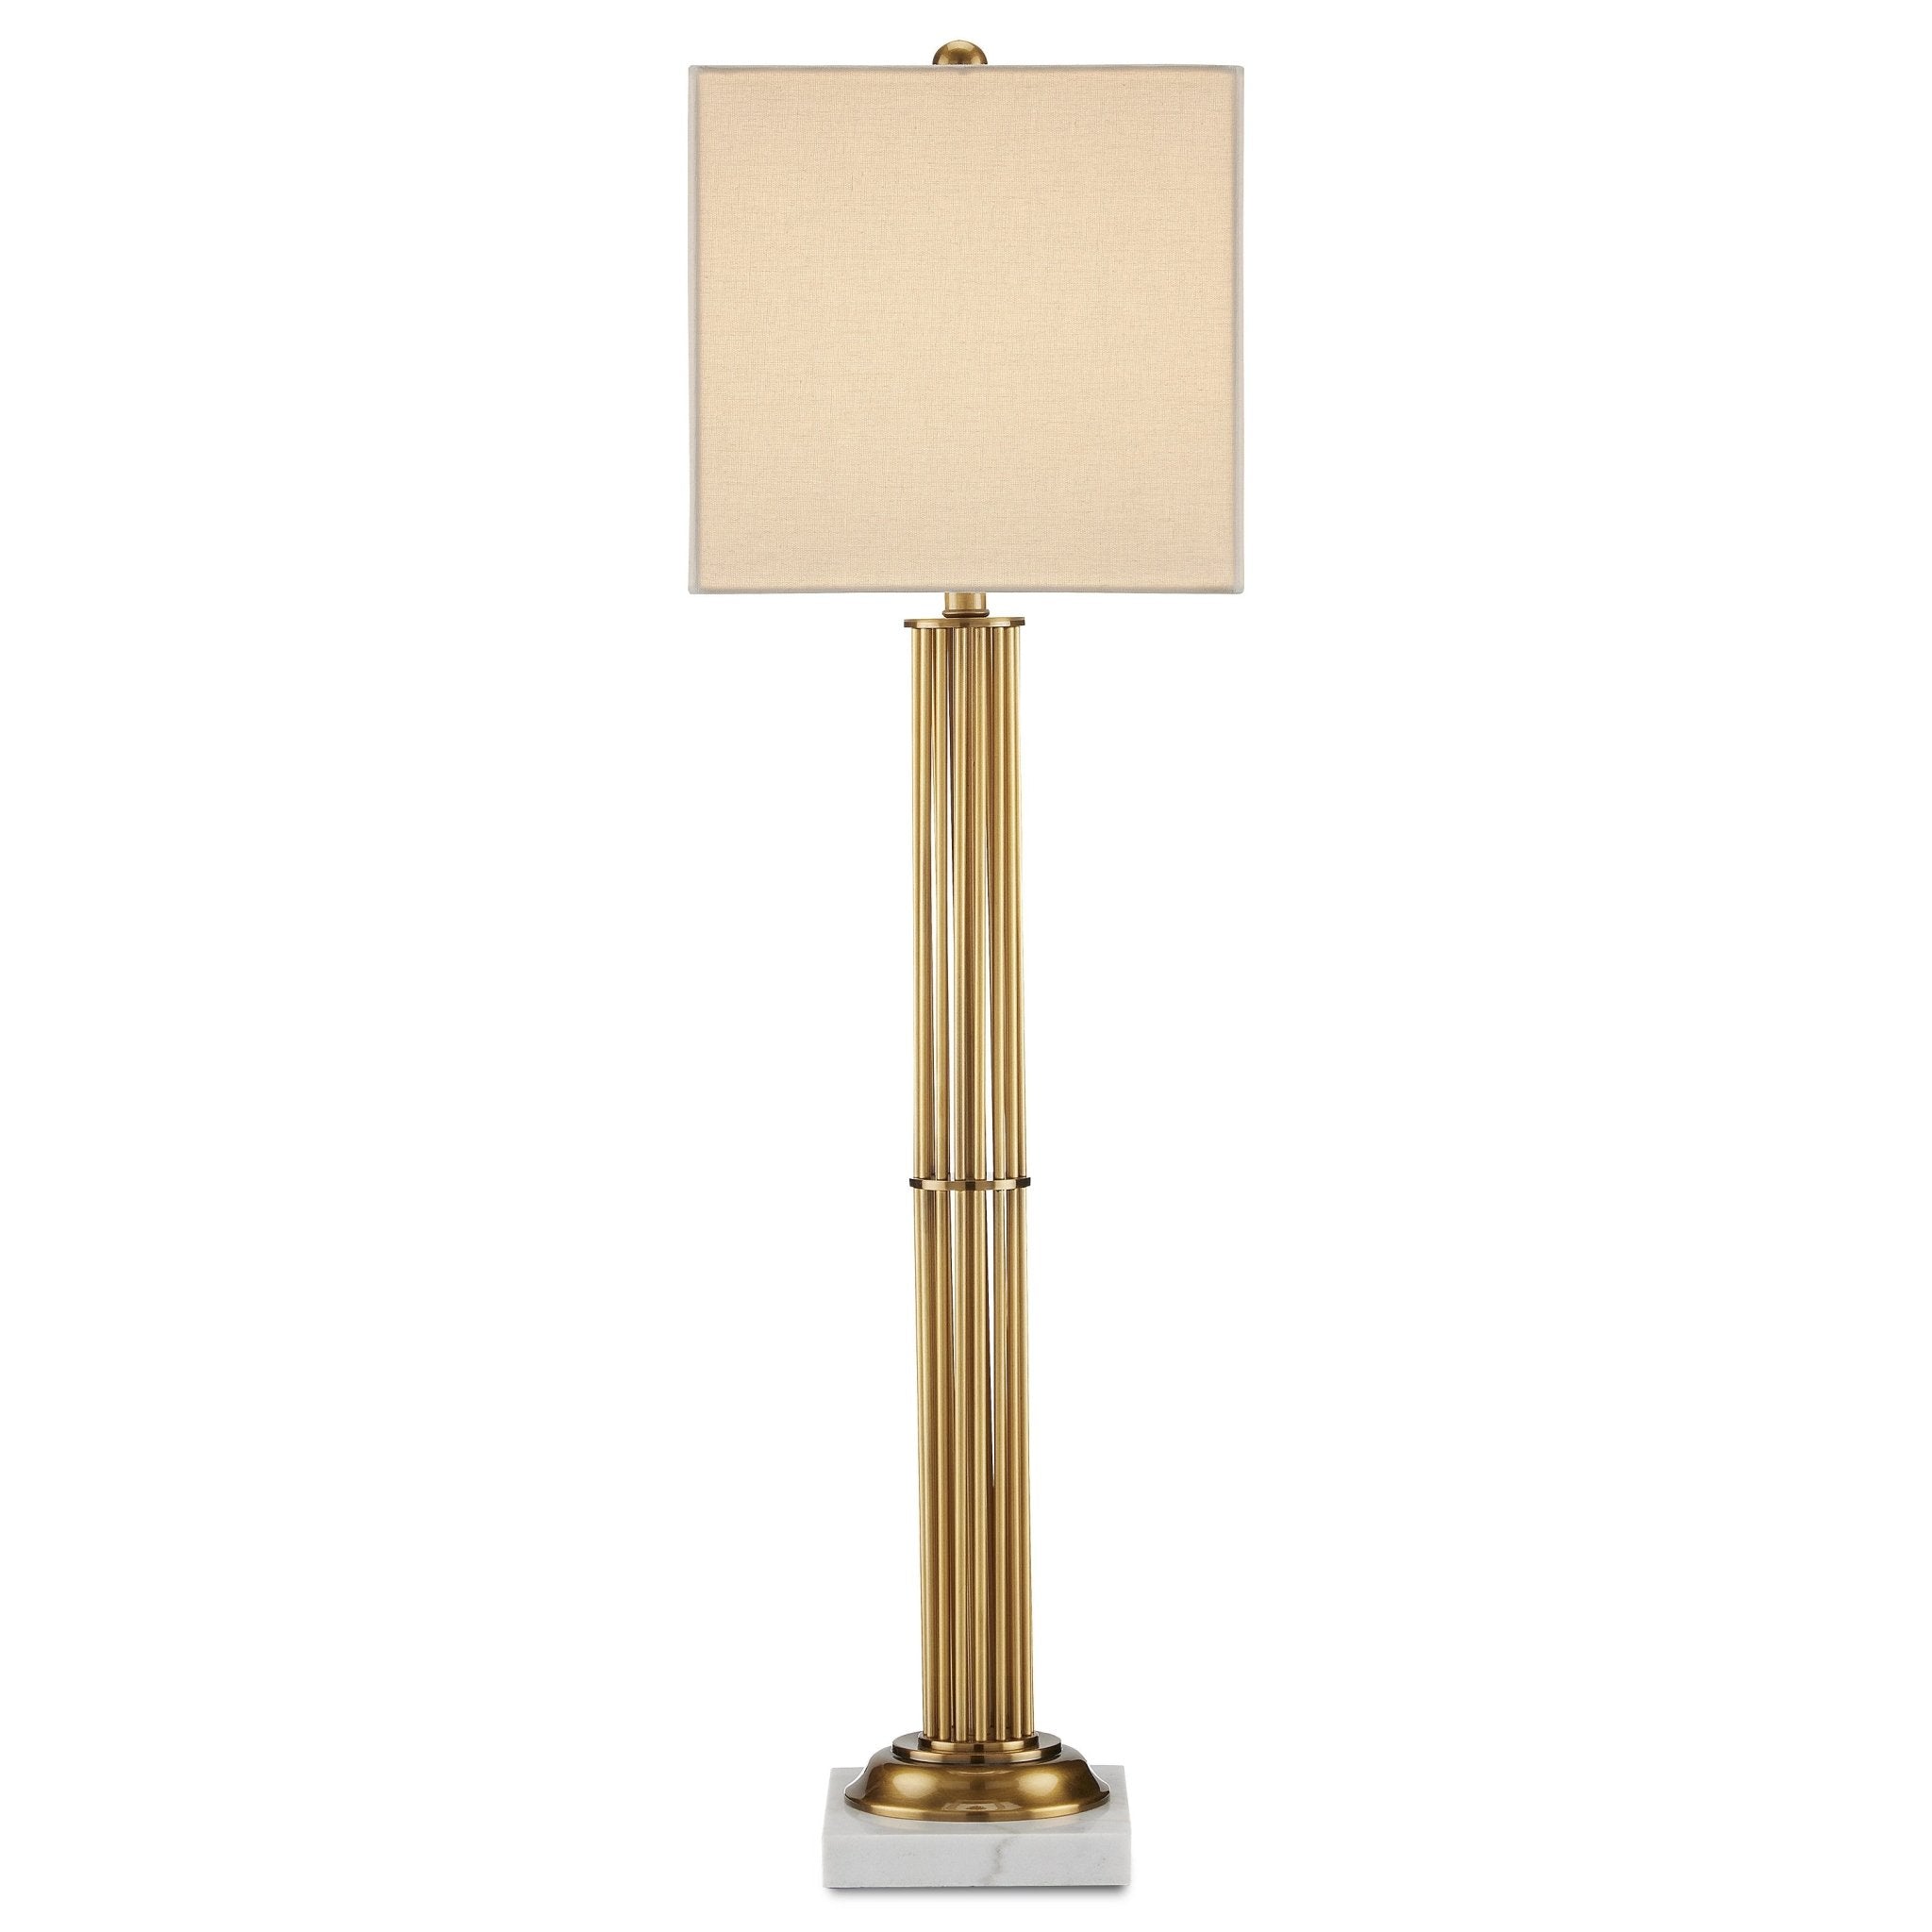 Allegory Table Lamp - Decor - Tipplergoods